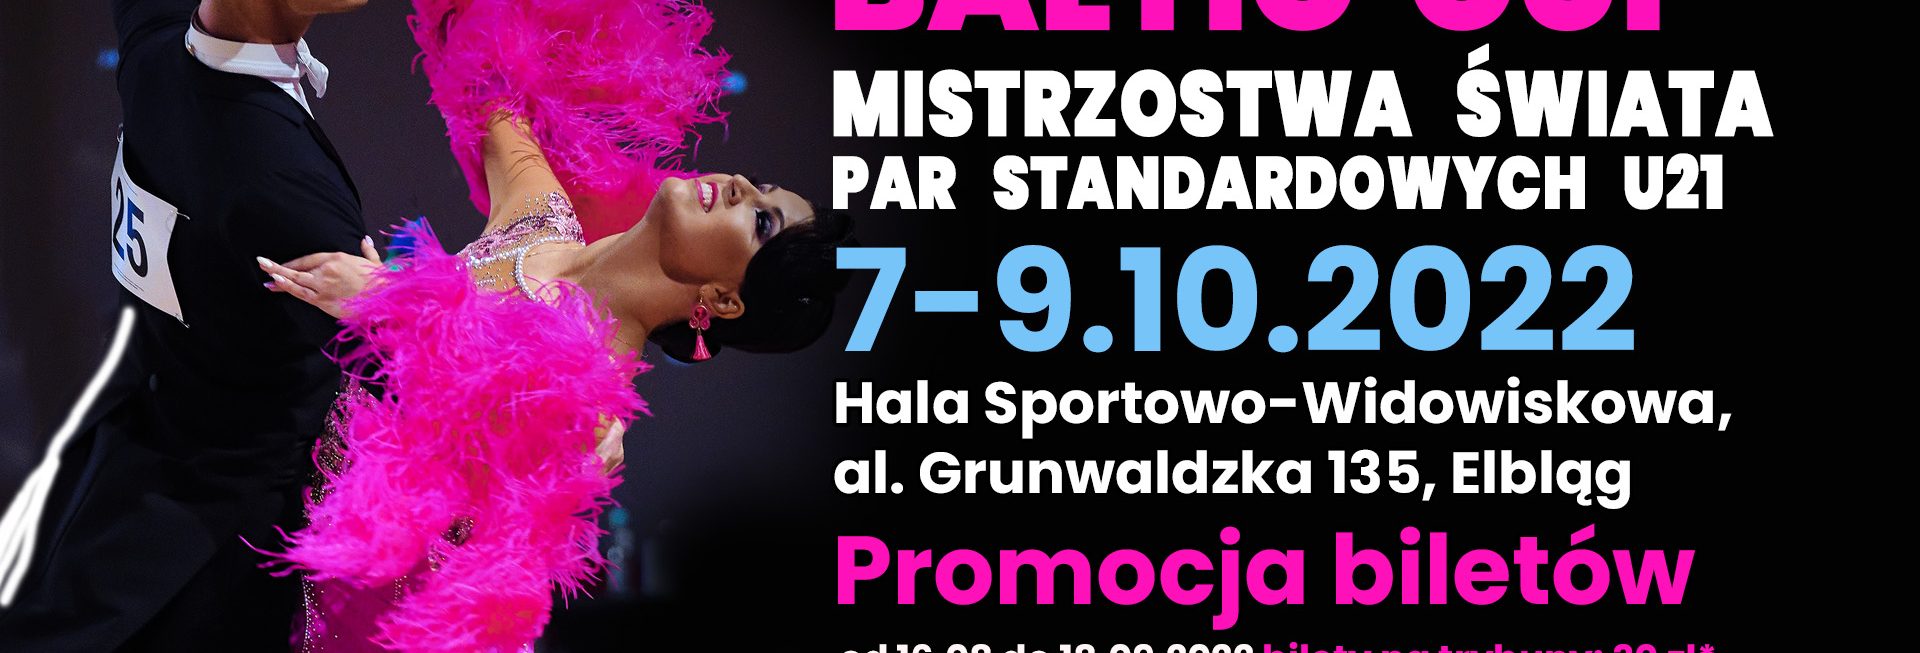 Plakat zapraszający do Elbląga na 22. edycję Międzynarodowego Festiwalu Tańca „Baltic Cup” Mistrzostwa Świata Par Standardowych u-21 Elbląg 2022.